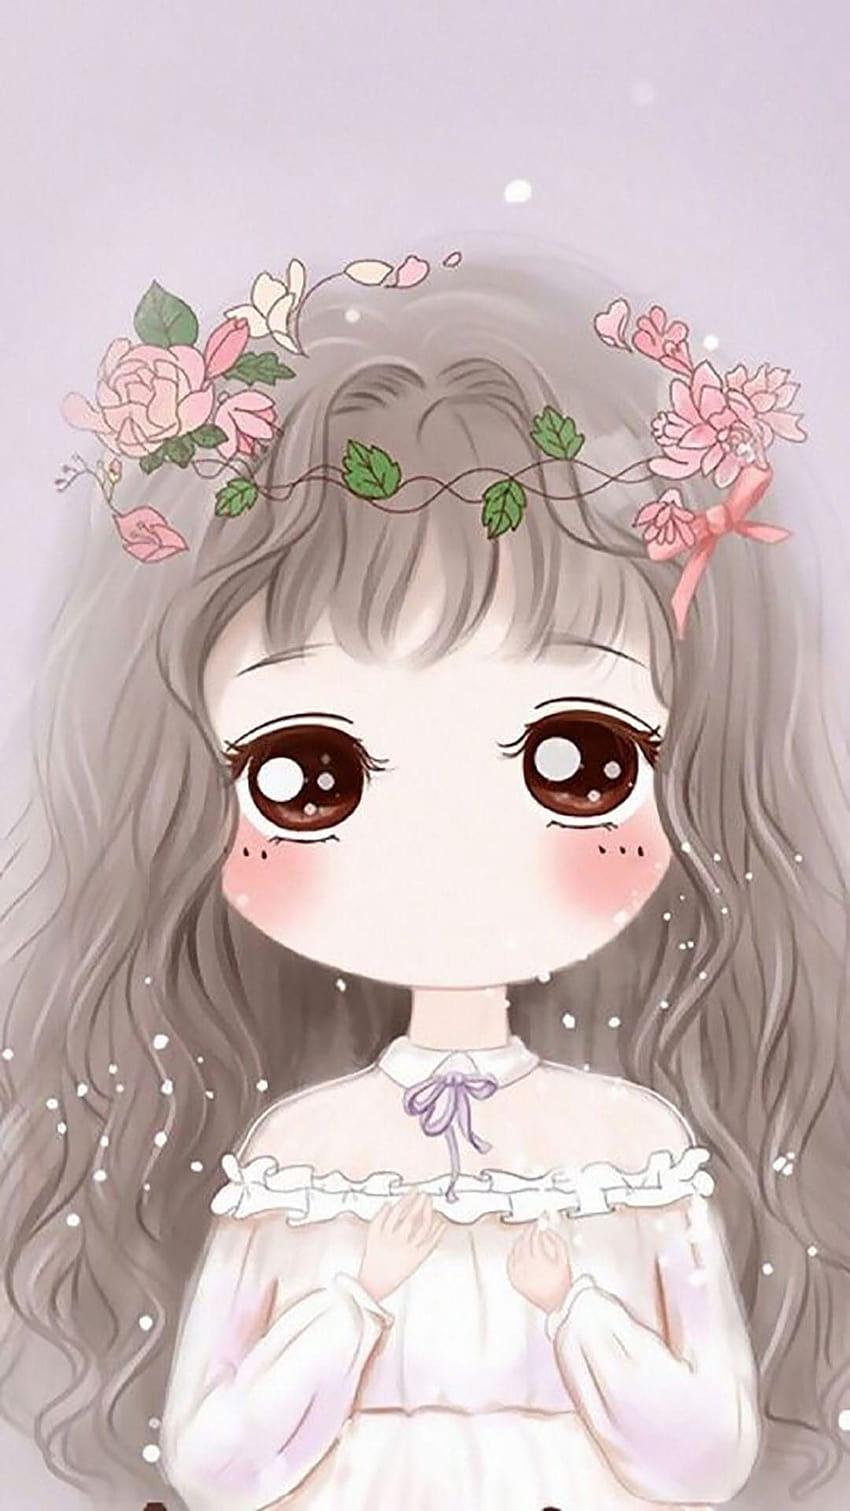 Anime girl chibi wallpaper: Xem một bức tường hình chibi của cô gái Anime nhỏ nhắn tạo ra cảm giác ấm áp và sảng khoái. Bức tường hình chibi này được thiết kế với sự chi tiết và tình yêu để tạo ra một hình ảnh độc đáo và thú vị để trang trí cho máy tính của bạn.